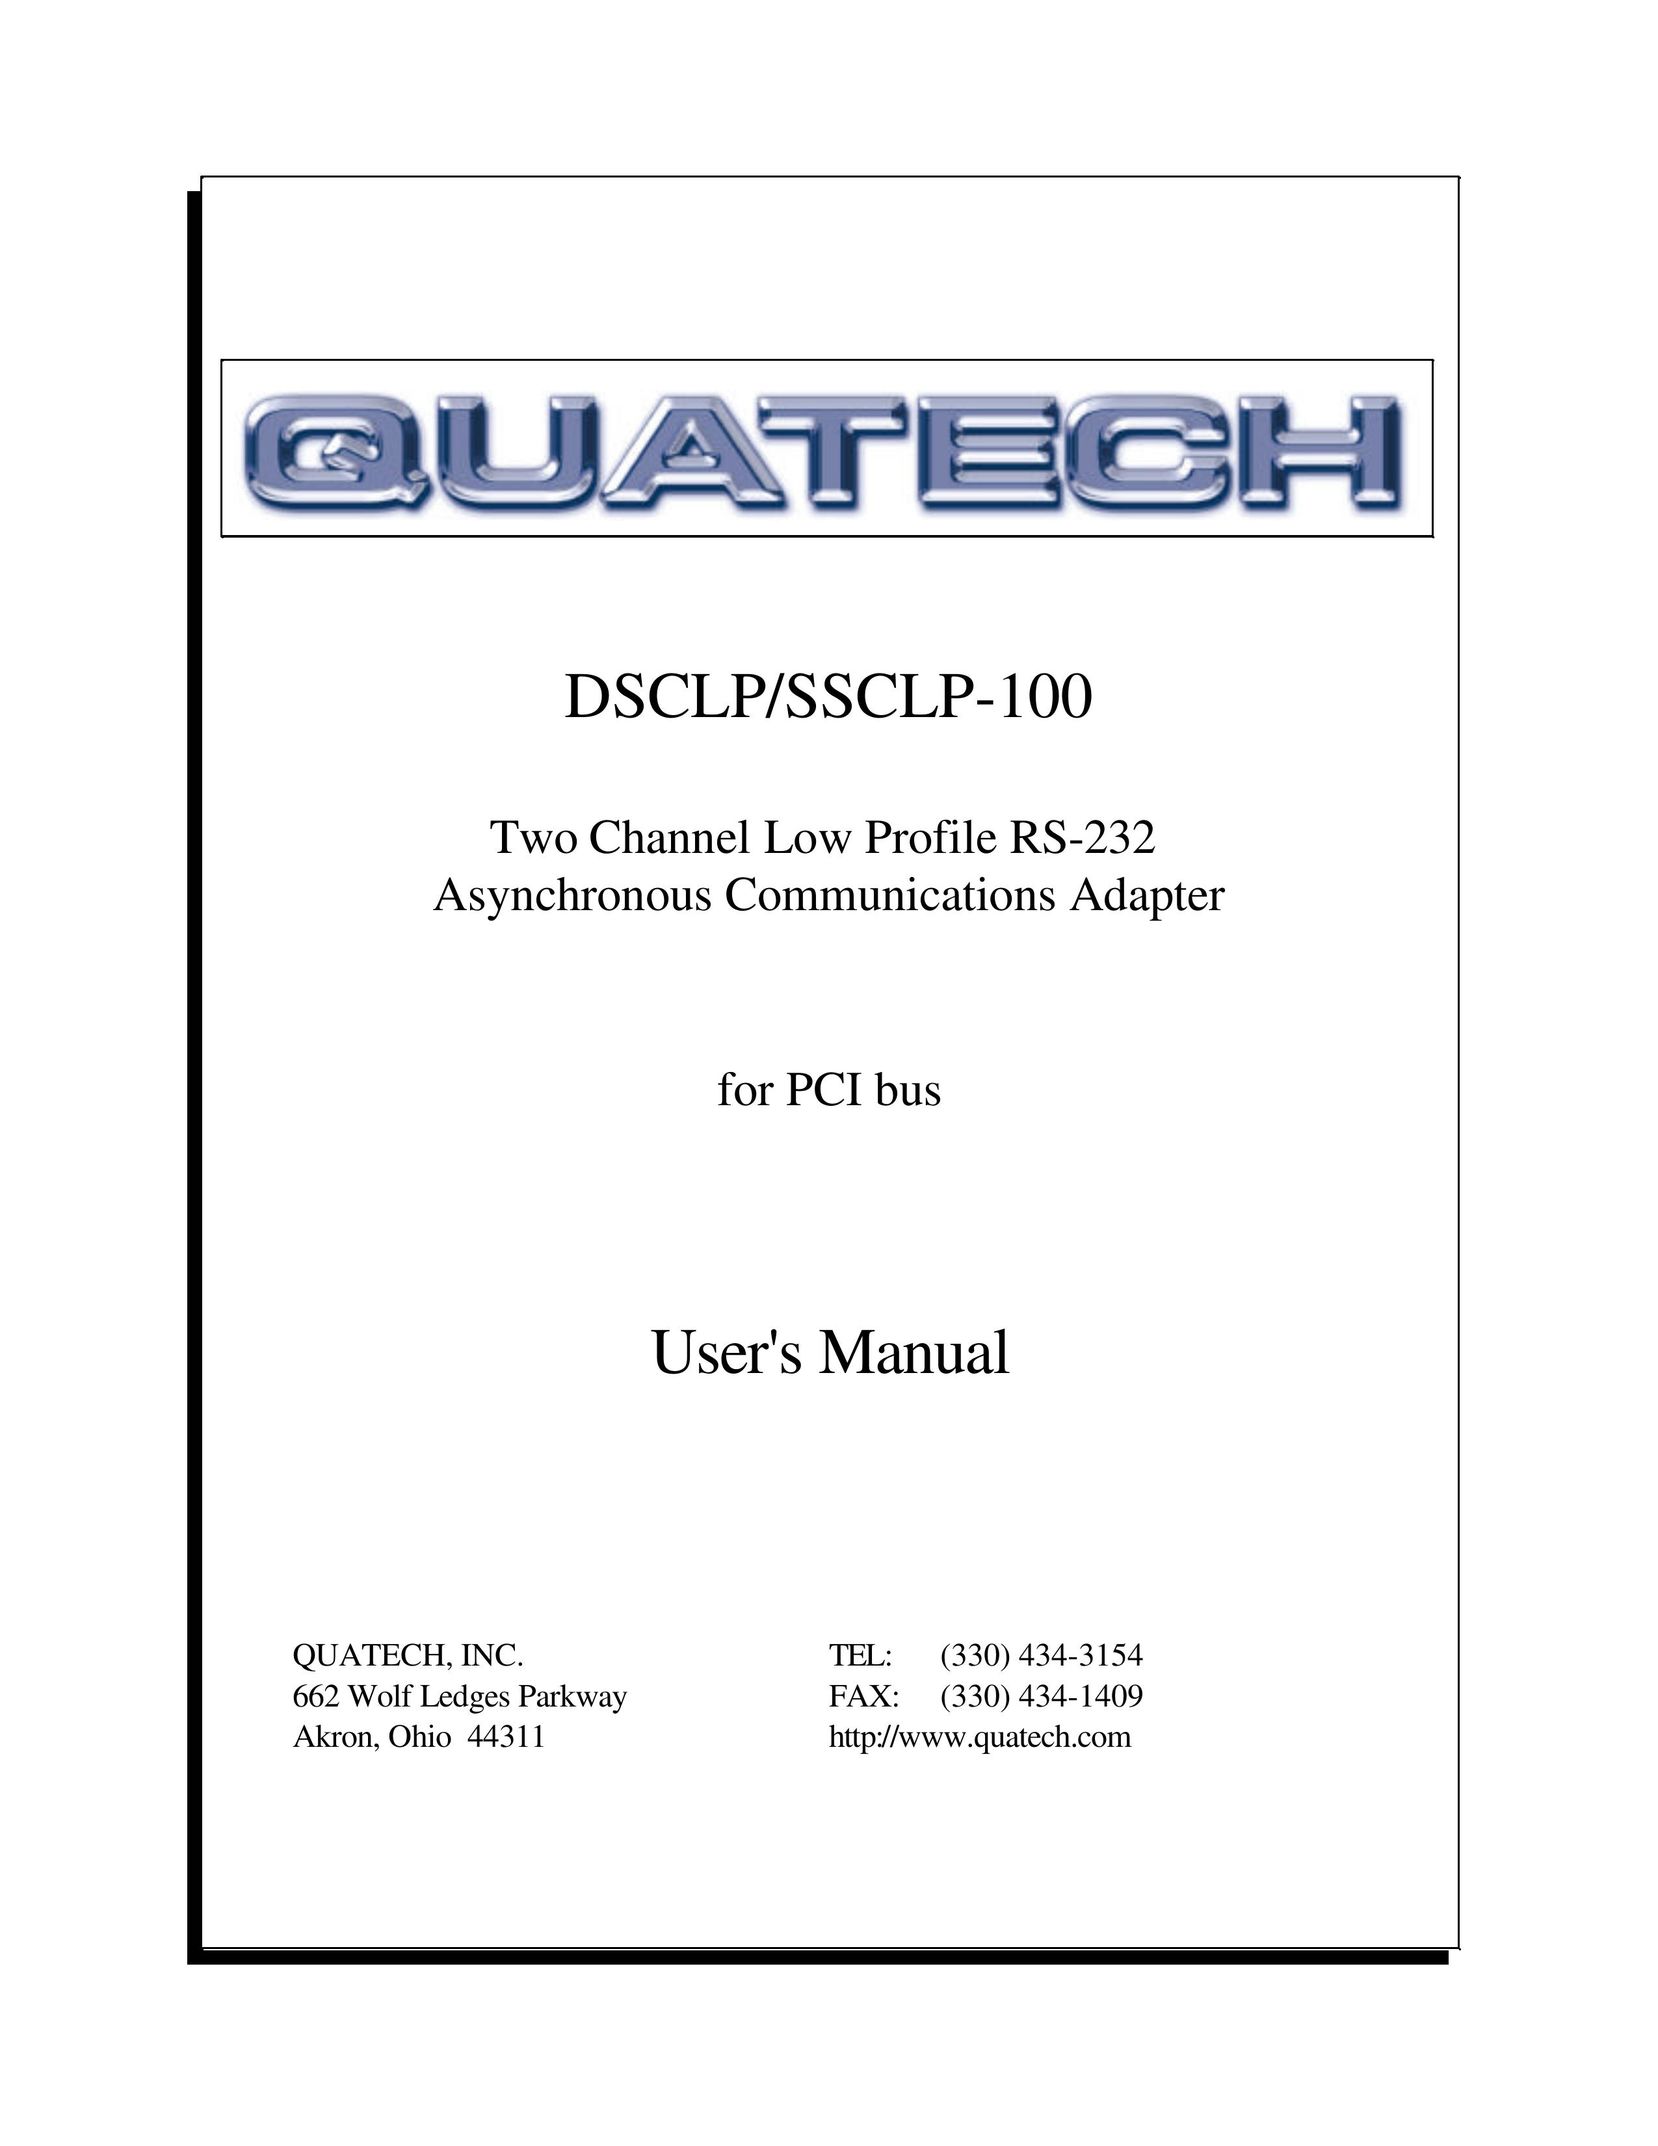 Quatech DSCLP-100 Network Card User Manual